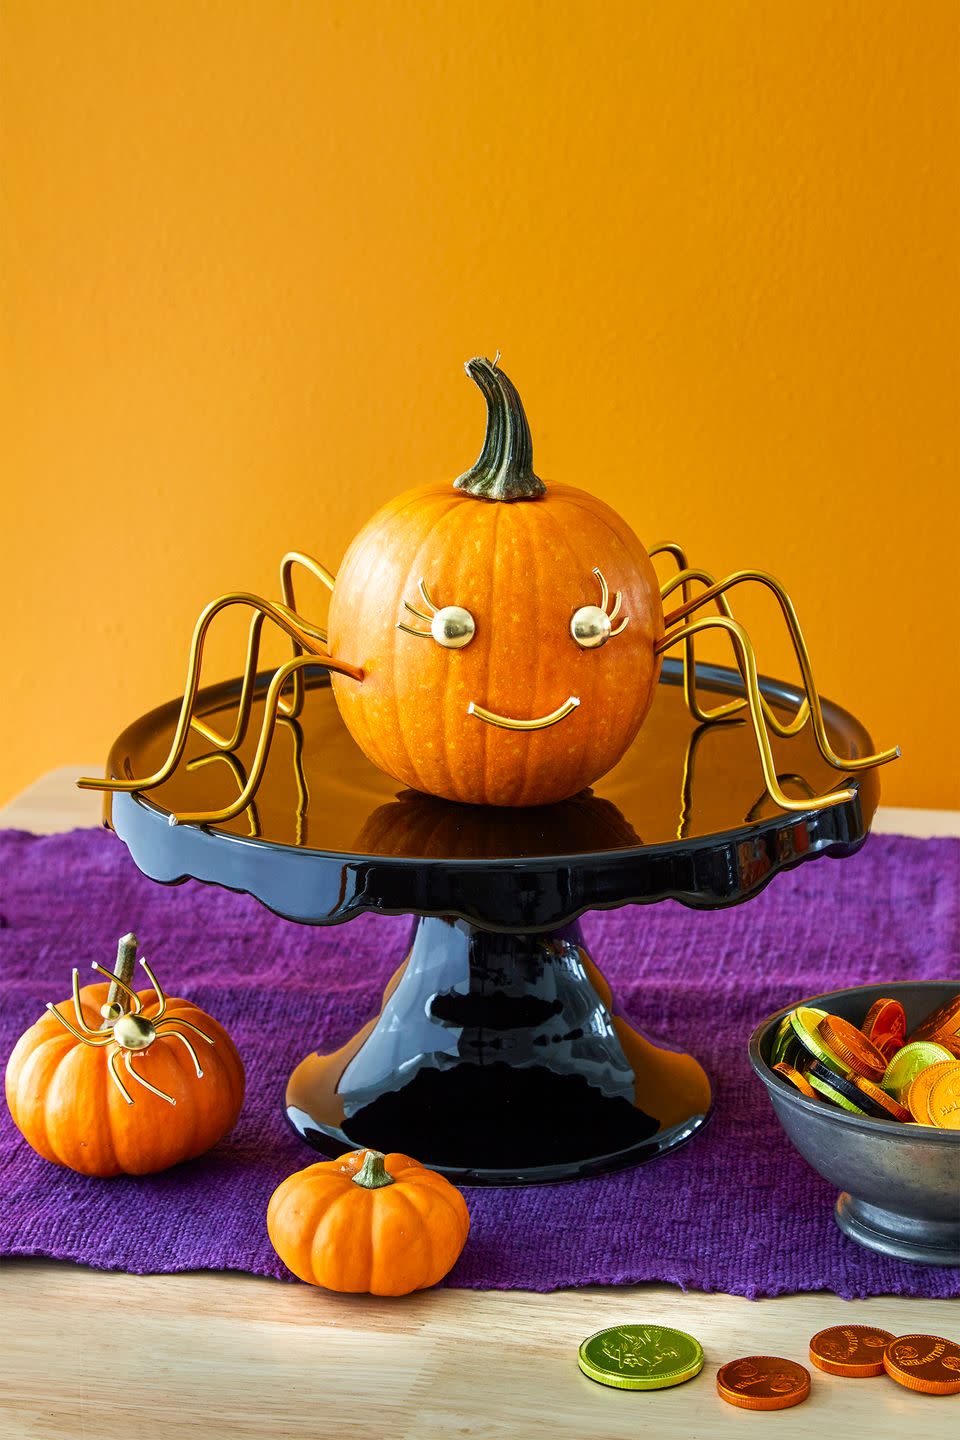 1) Pumpkin Pedestal